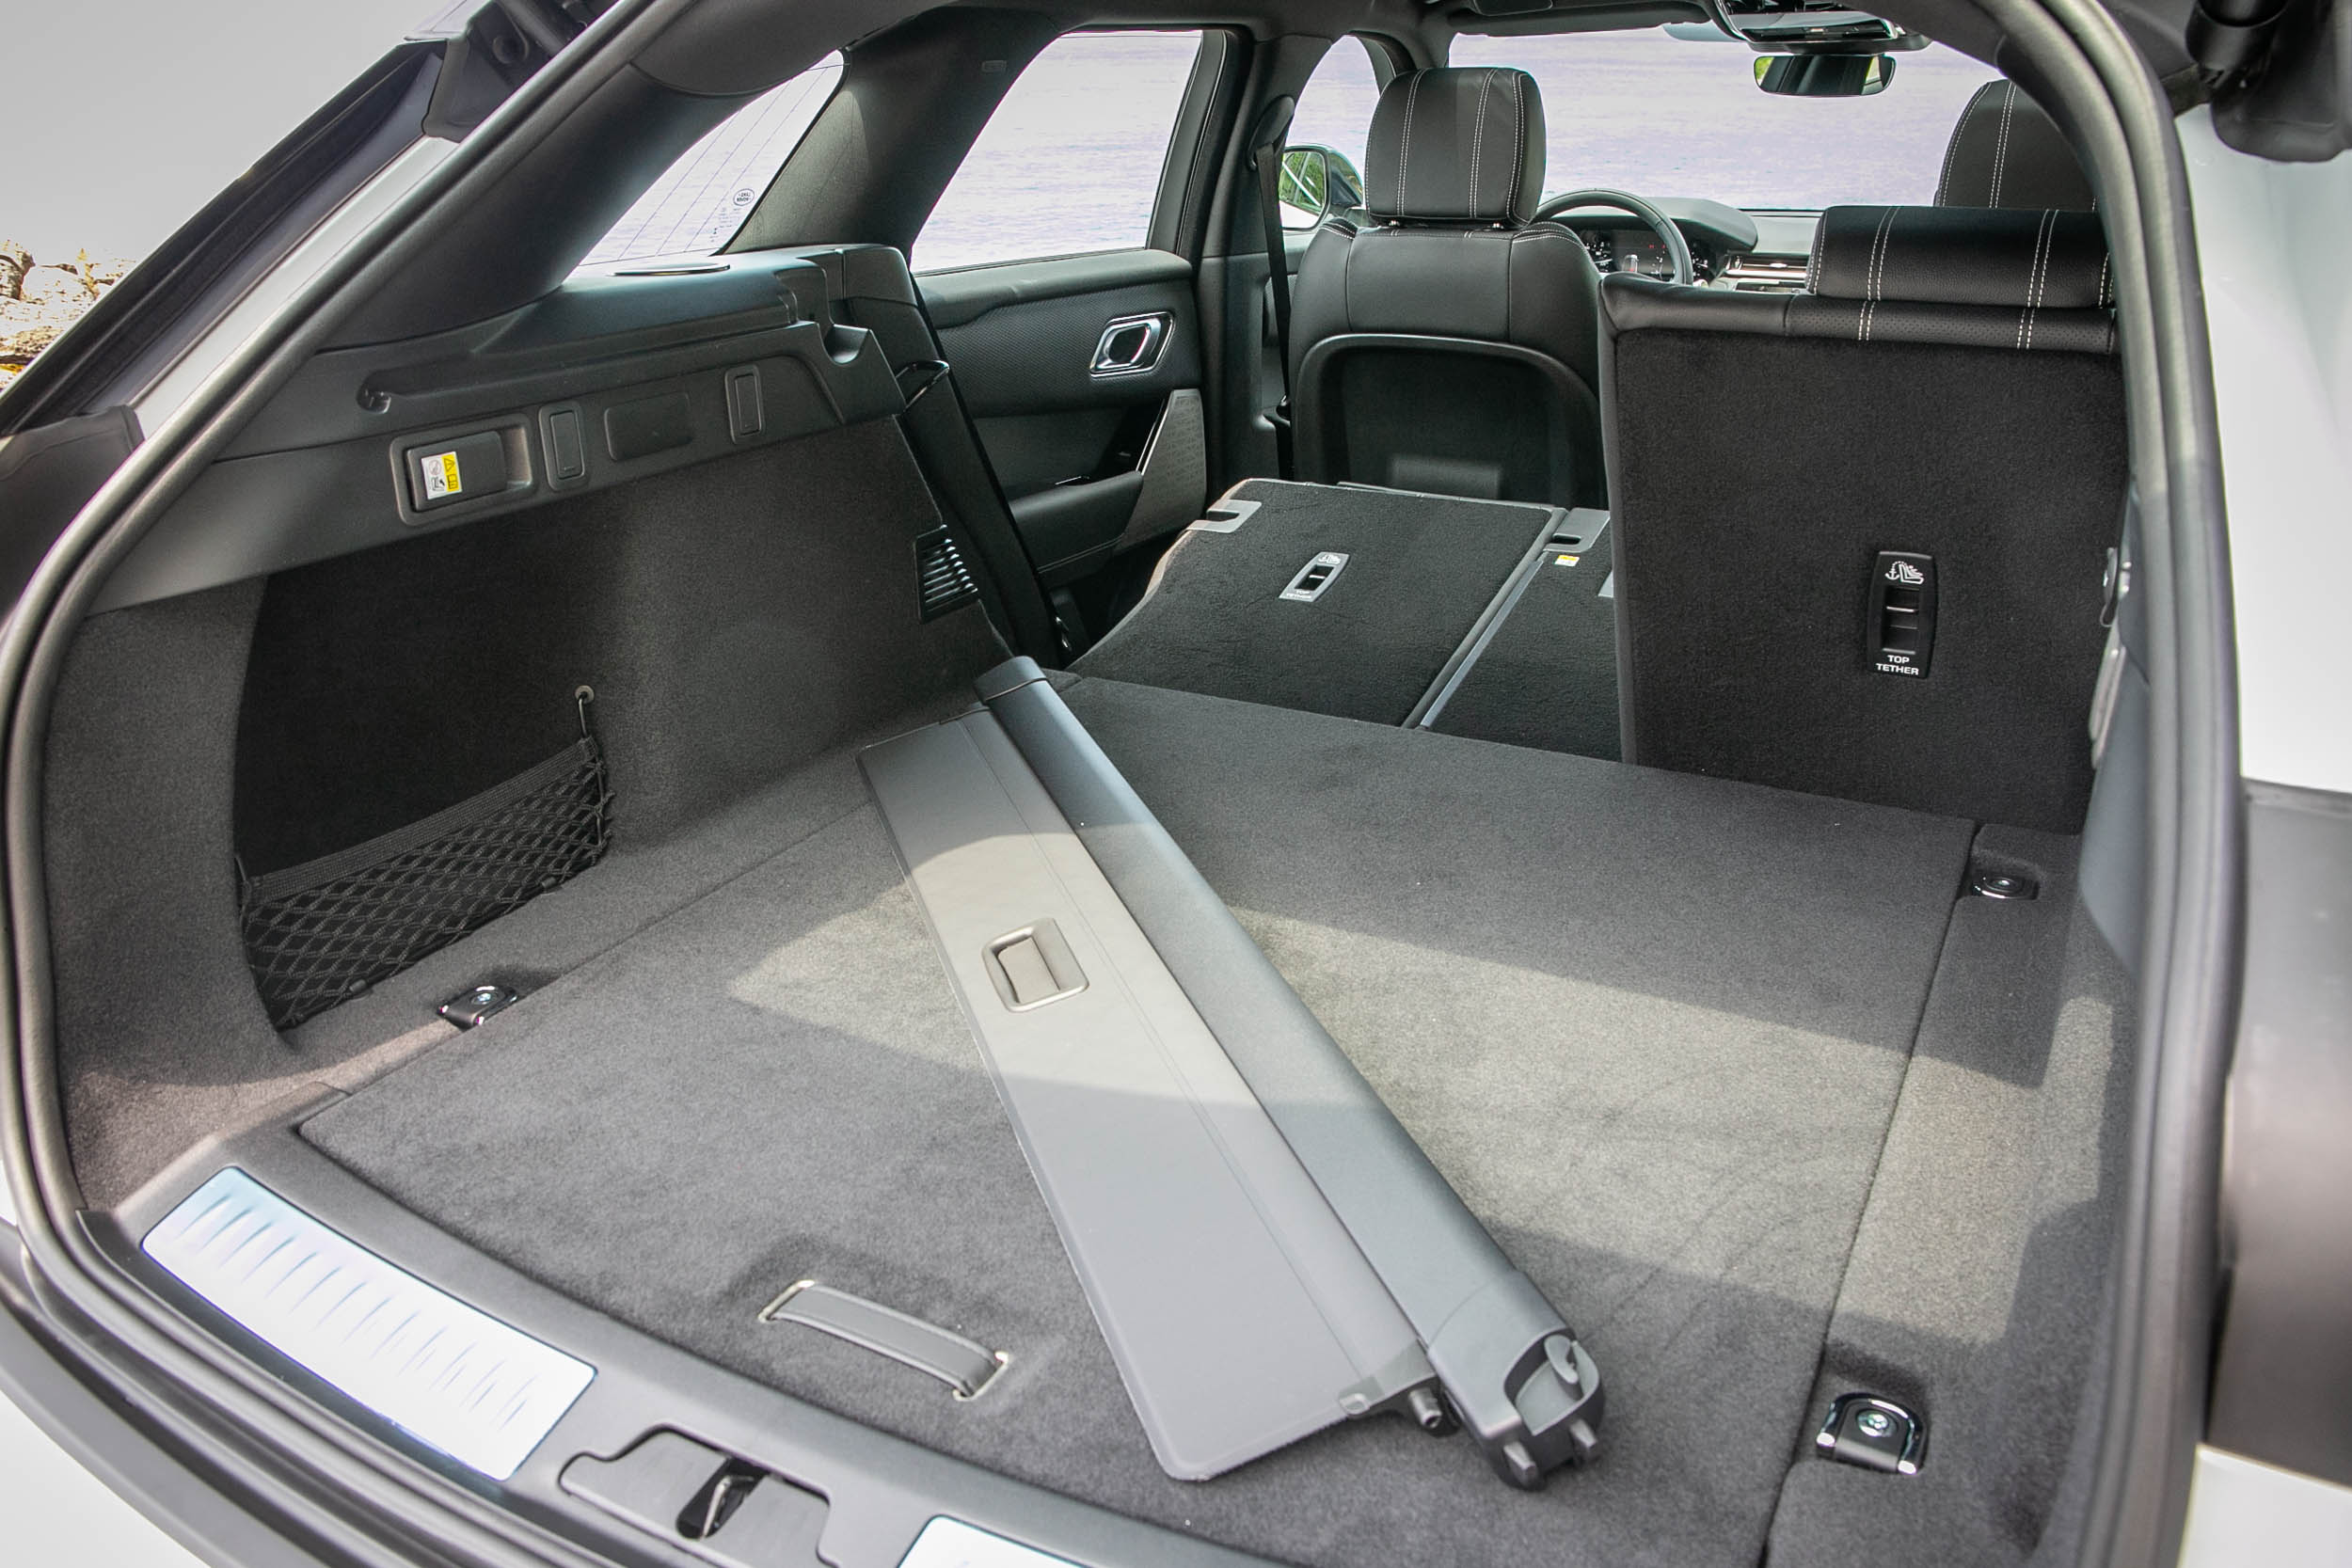 標準乘坐狀態下後廂容積為 568 公升，可透過後座椅背傾倒機制再擴充。